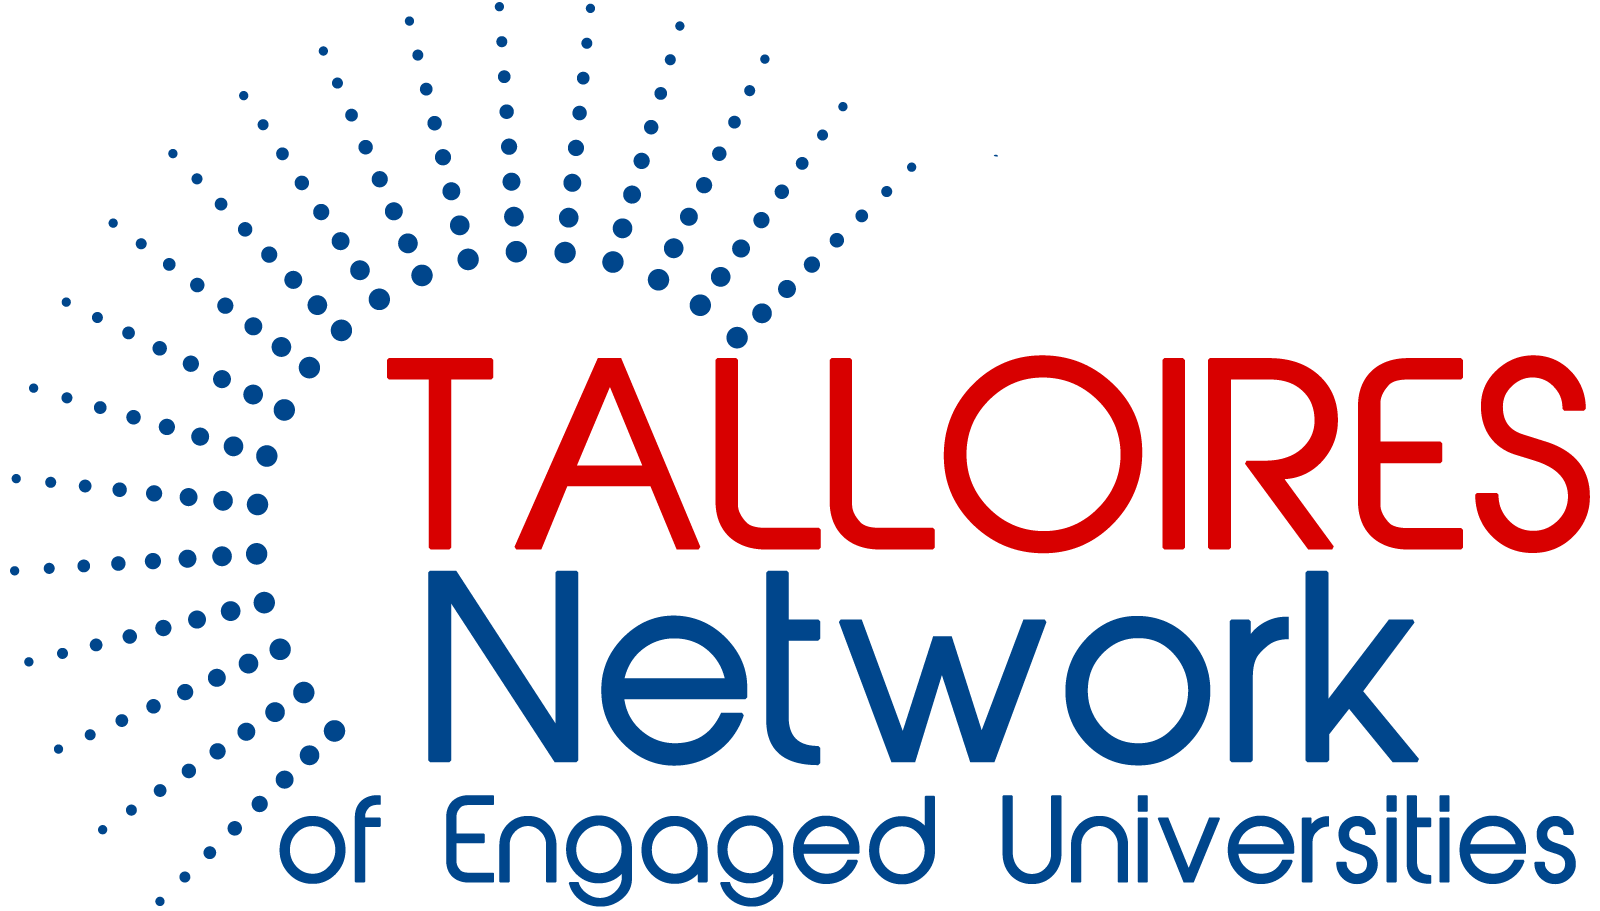 Talloires Network Member Fee